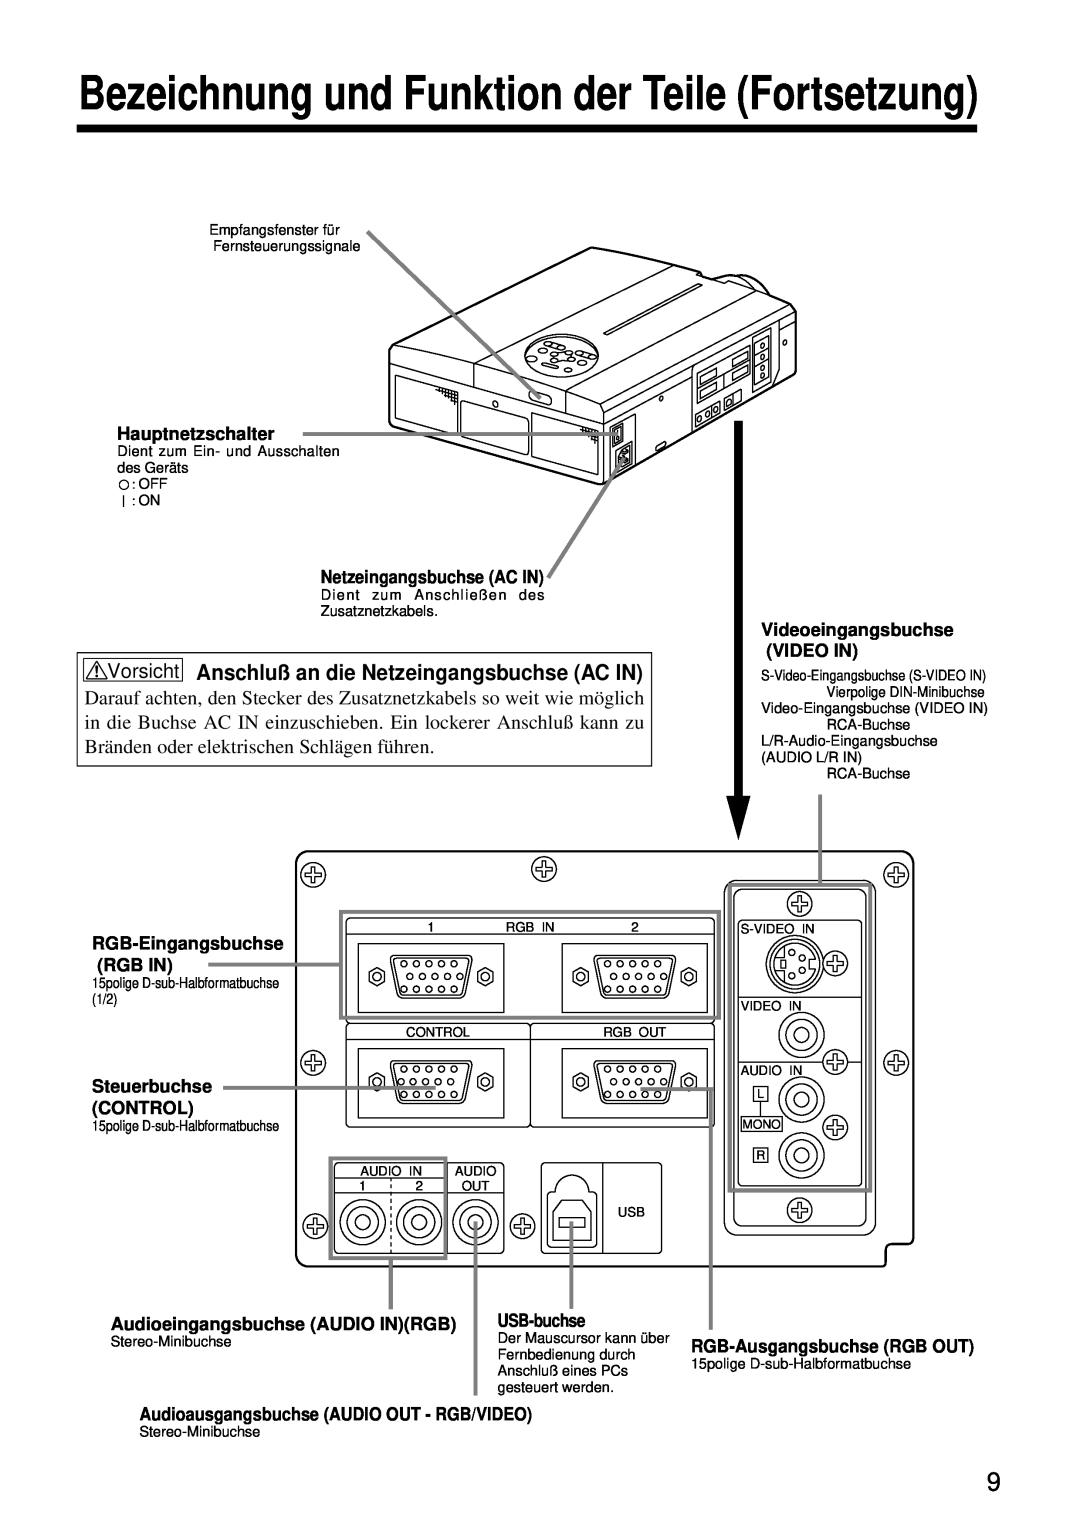 Hitachi CP-S860W Bezeichnung und Funktion der Teile Fortsetzung, Vorsicht Anschluß an die Netzeingangsbuchse AC IN 